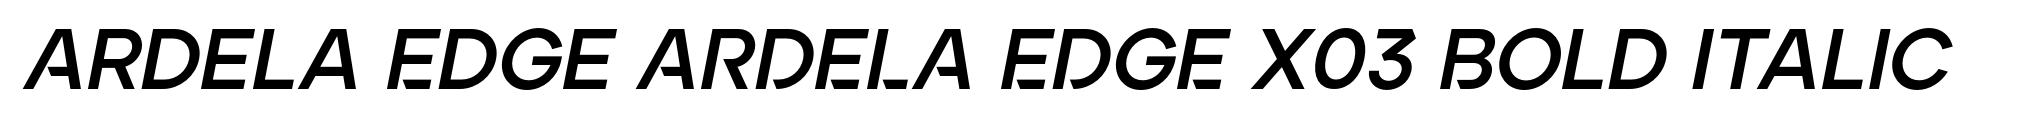 Ardela Edge ARDELA EDGE X03 Bold Italic image